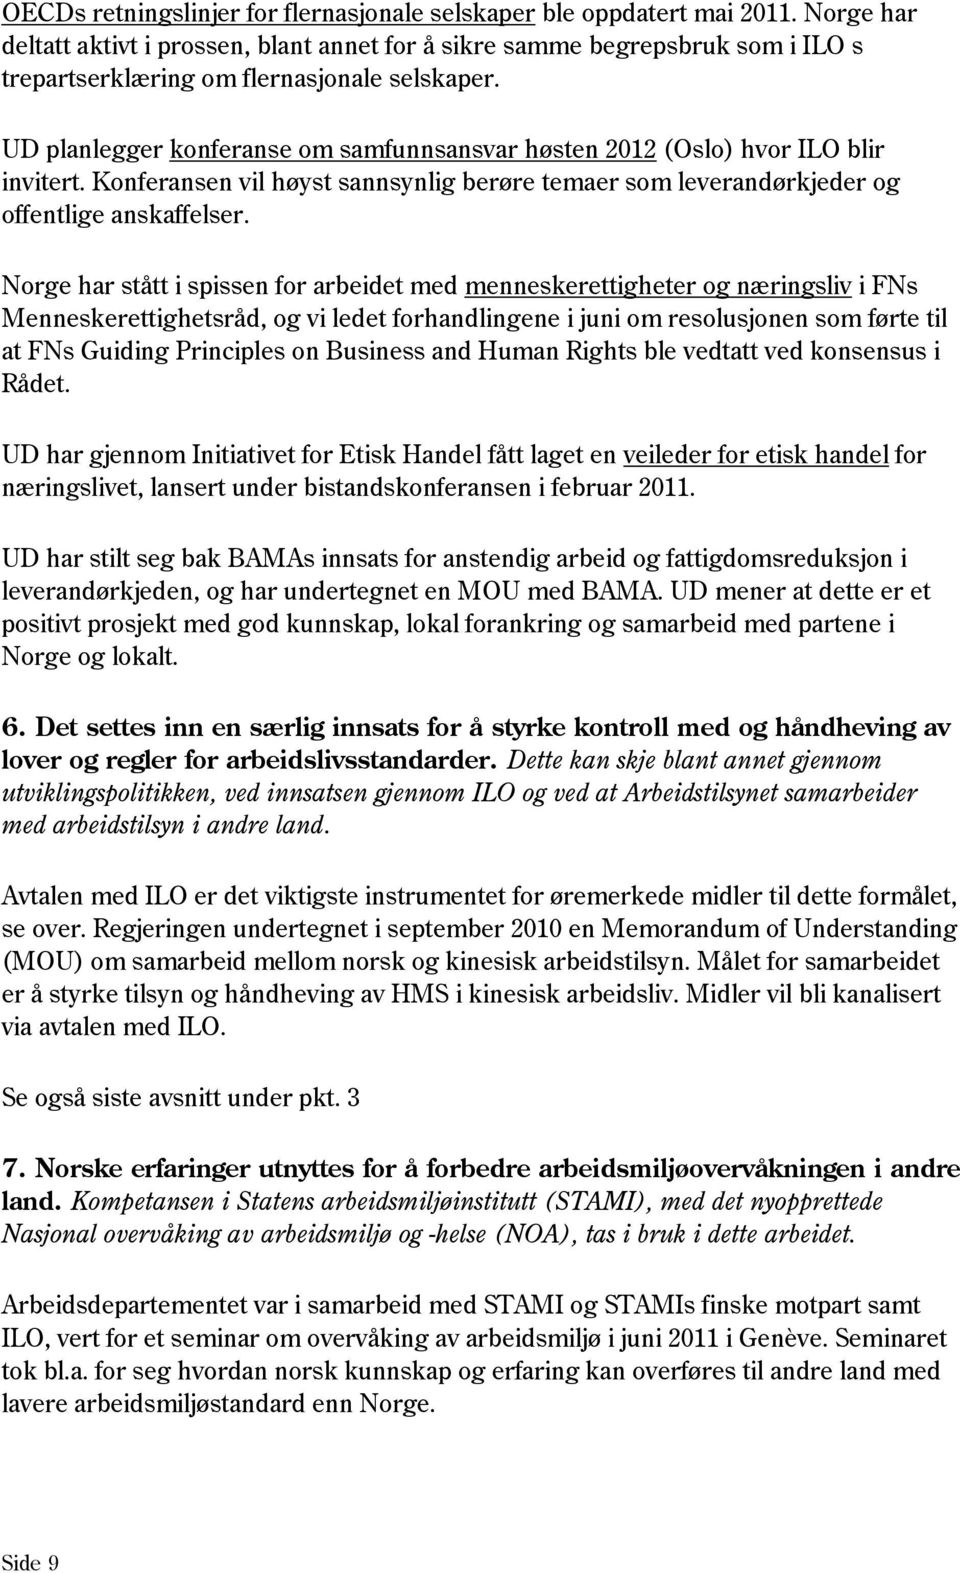 UD planlegger konferanse om samfunnsansvar høsten 2012 (Oslo) hvor ILO blir invitert. Konferansen vil høyst sannsynlig berøre temaer som leverandørkjeder og offentlige anskaffelser.